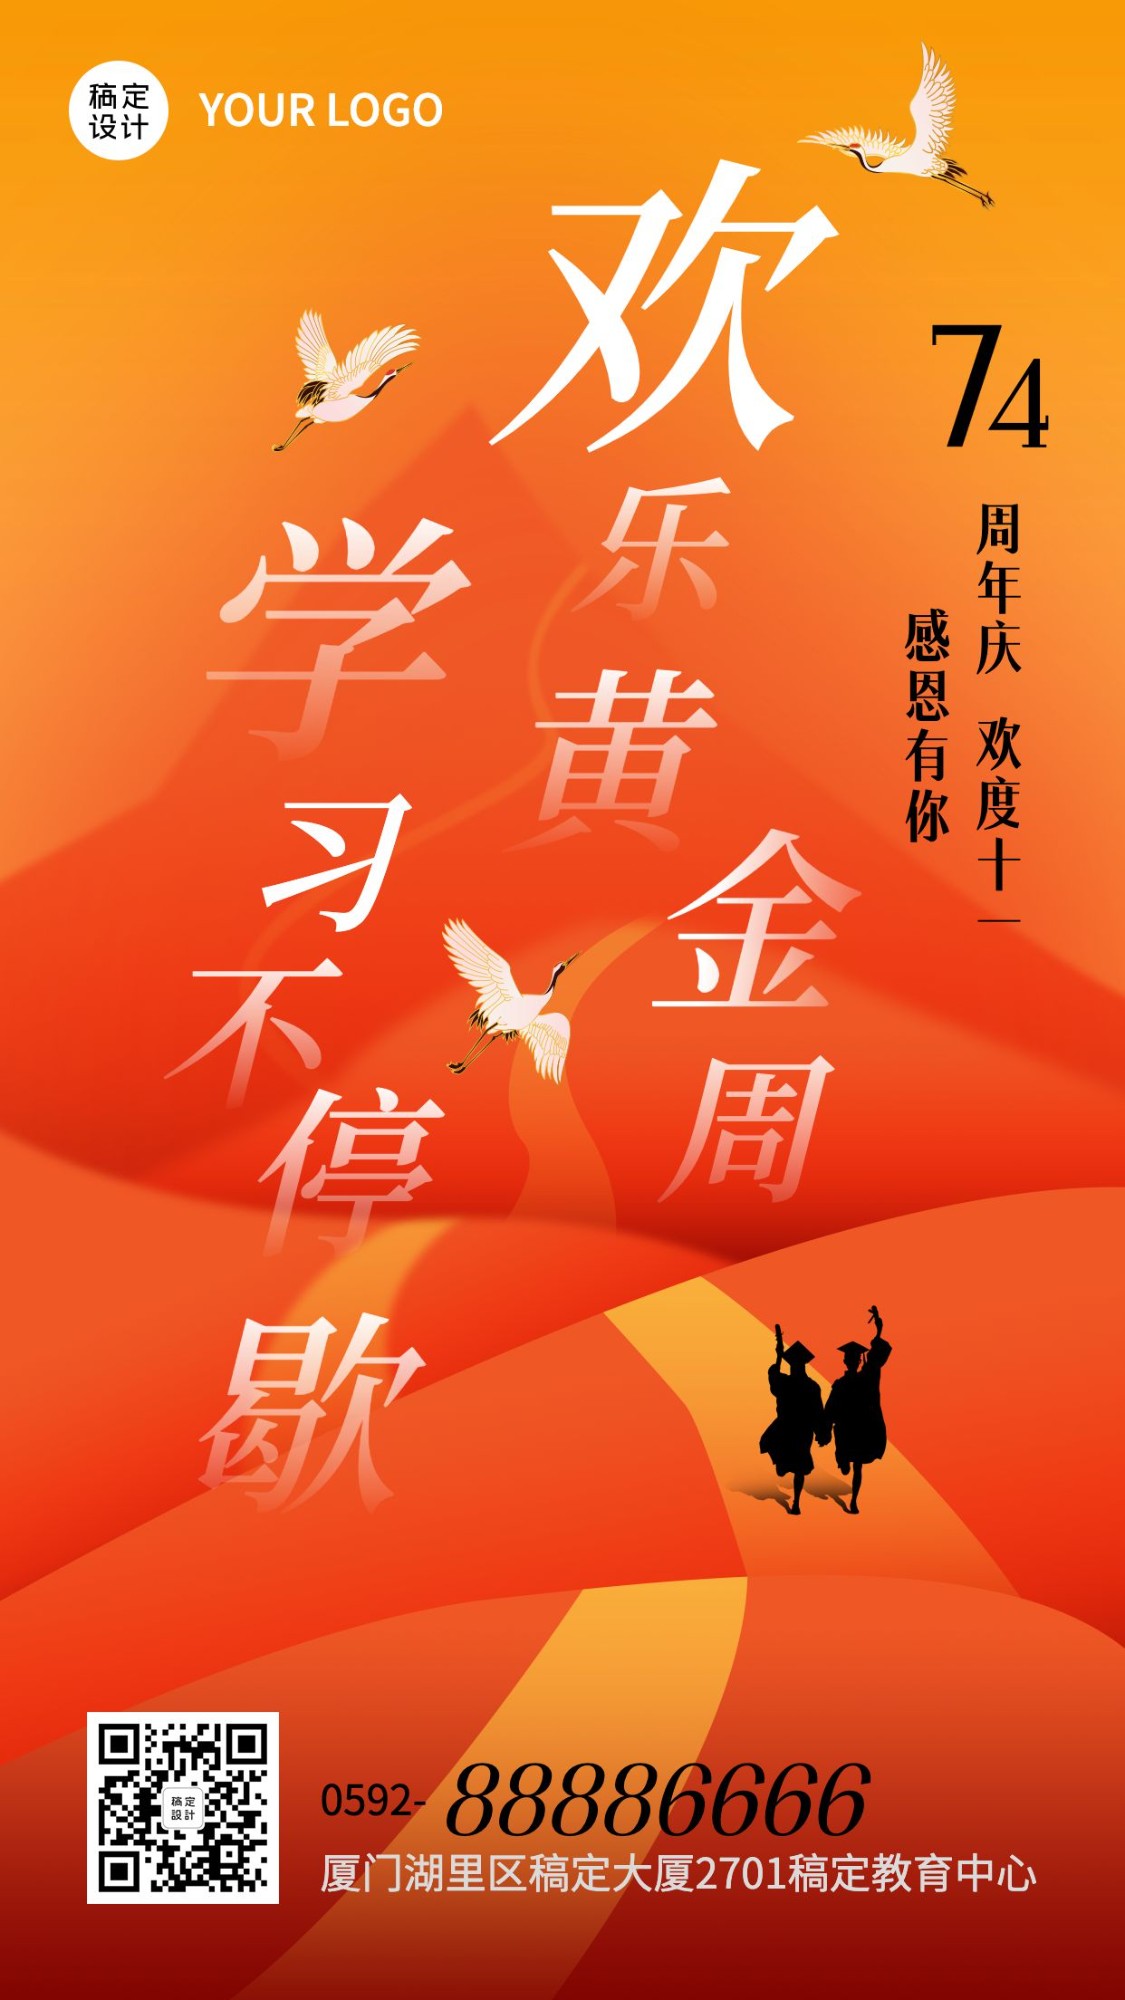 十一国庆节黄金周课程促销手机海报